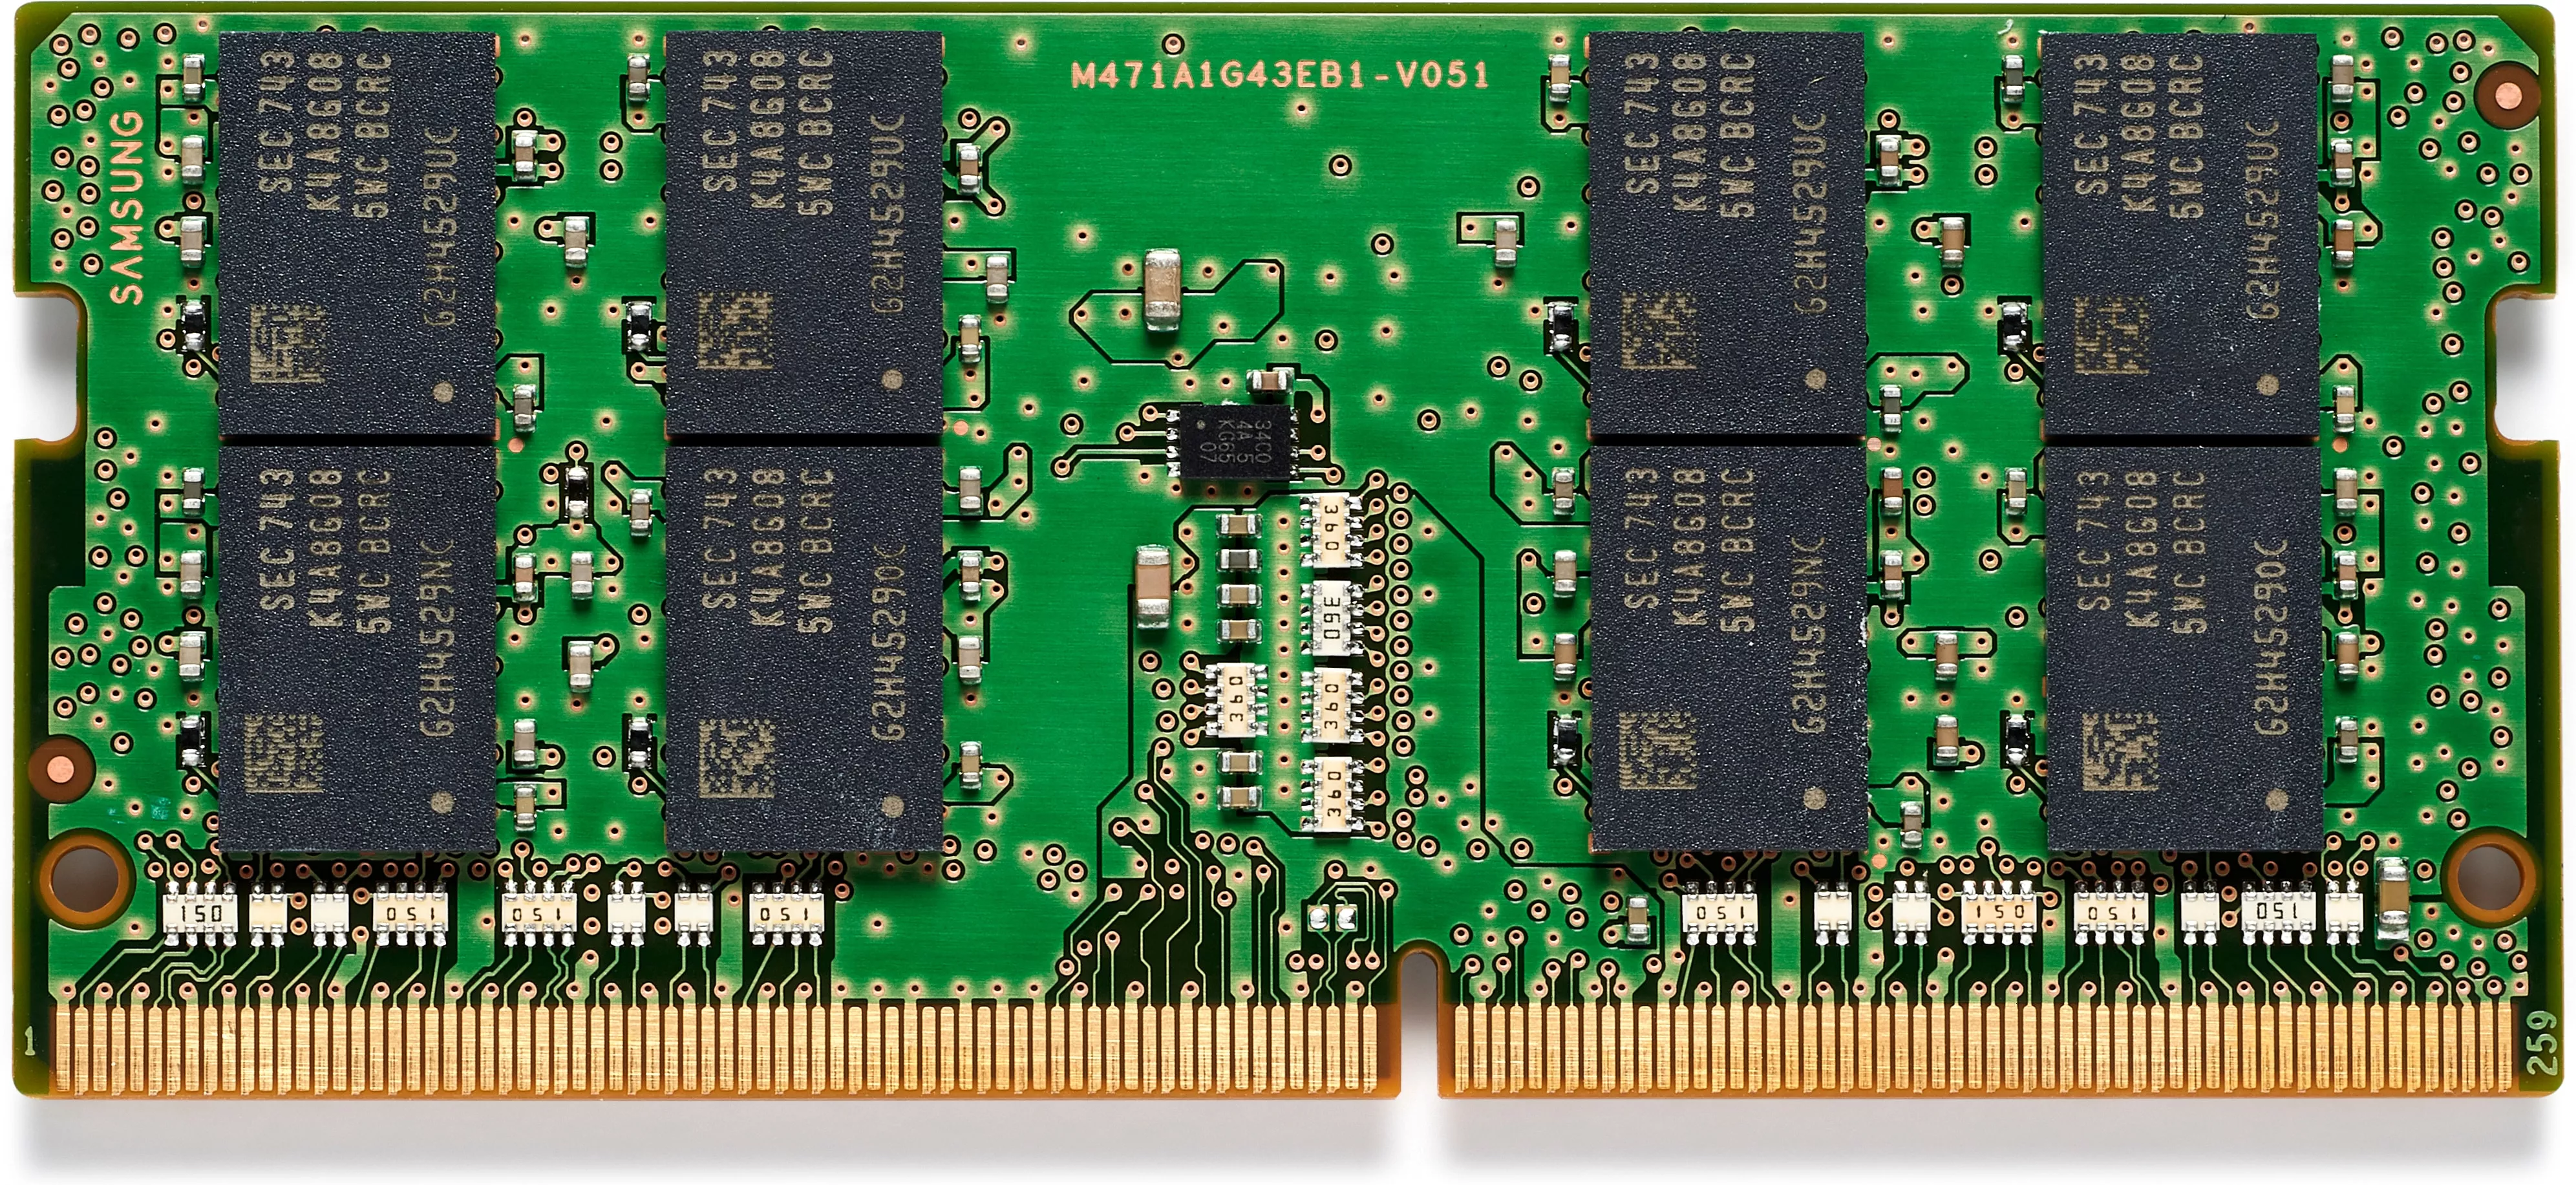 Achat Mémoire HP 32GB DDR4 1x32GB 3200 SODIMM Memory -WW sur hello RSE